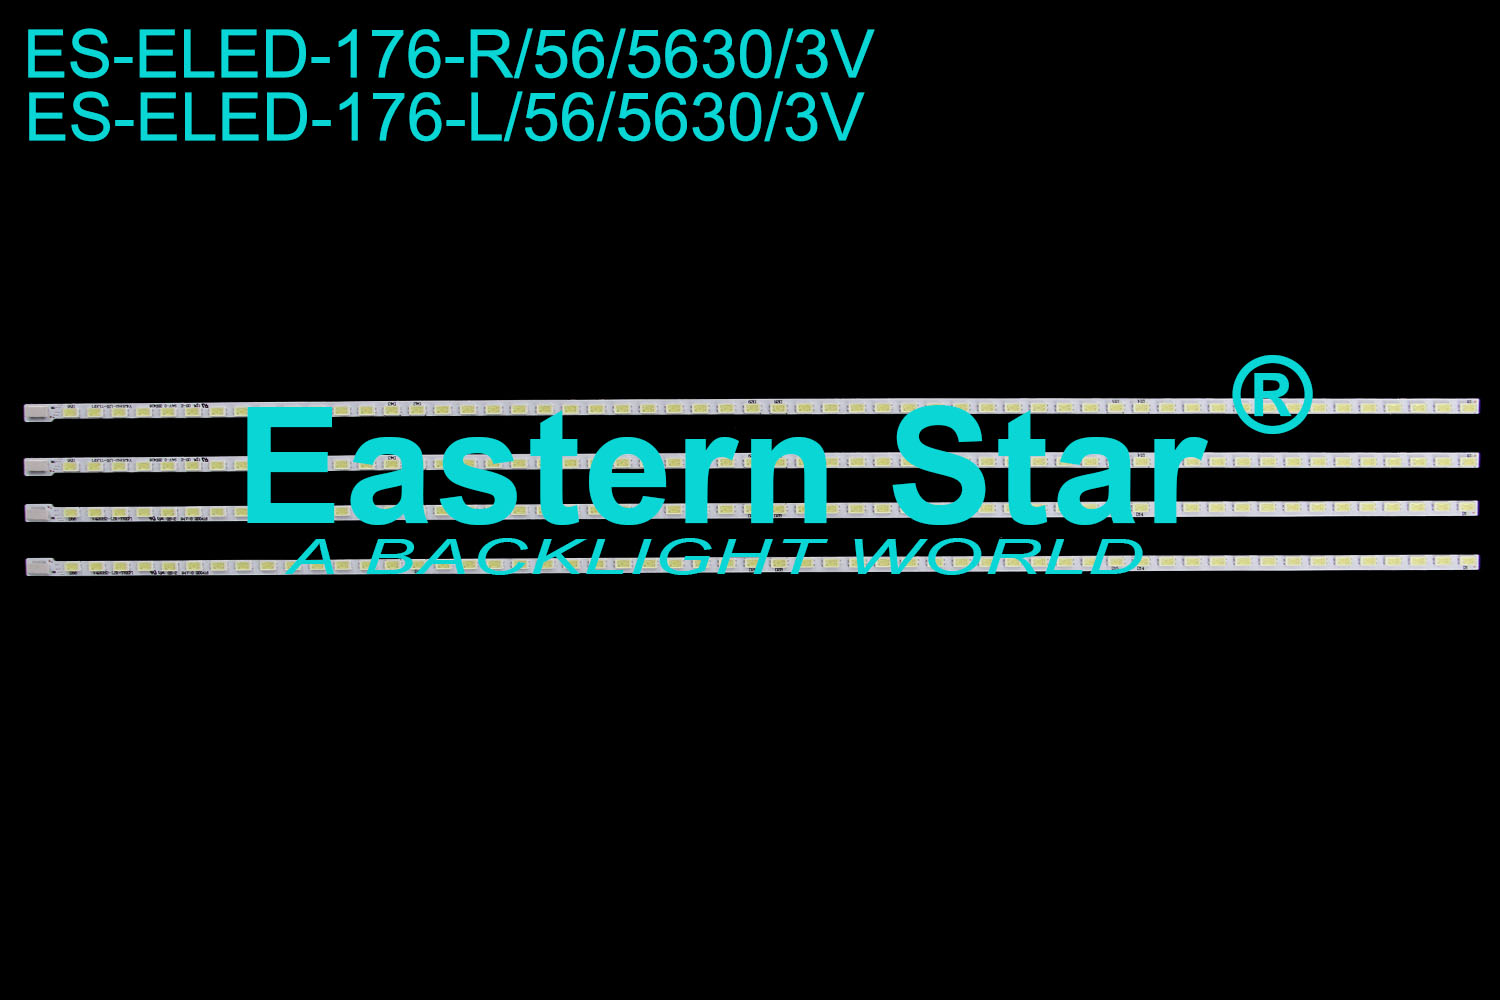 ES-ELED-176 ELED/EDGE TV backlight 42'' 56LEDs  V420H2-LS1-TR/LEF1 LED STRIP(4)